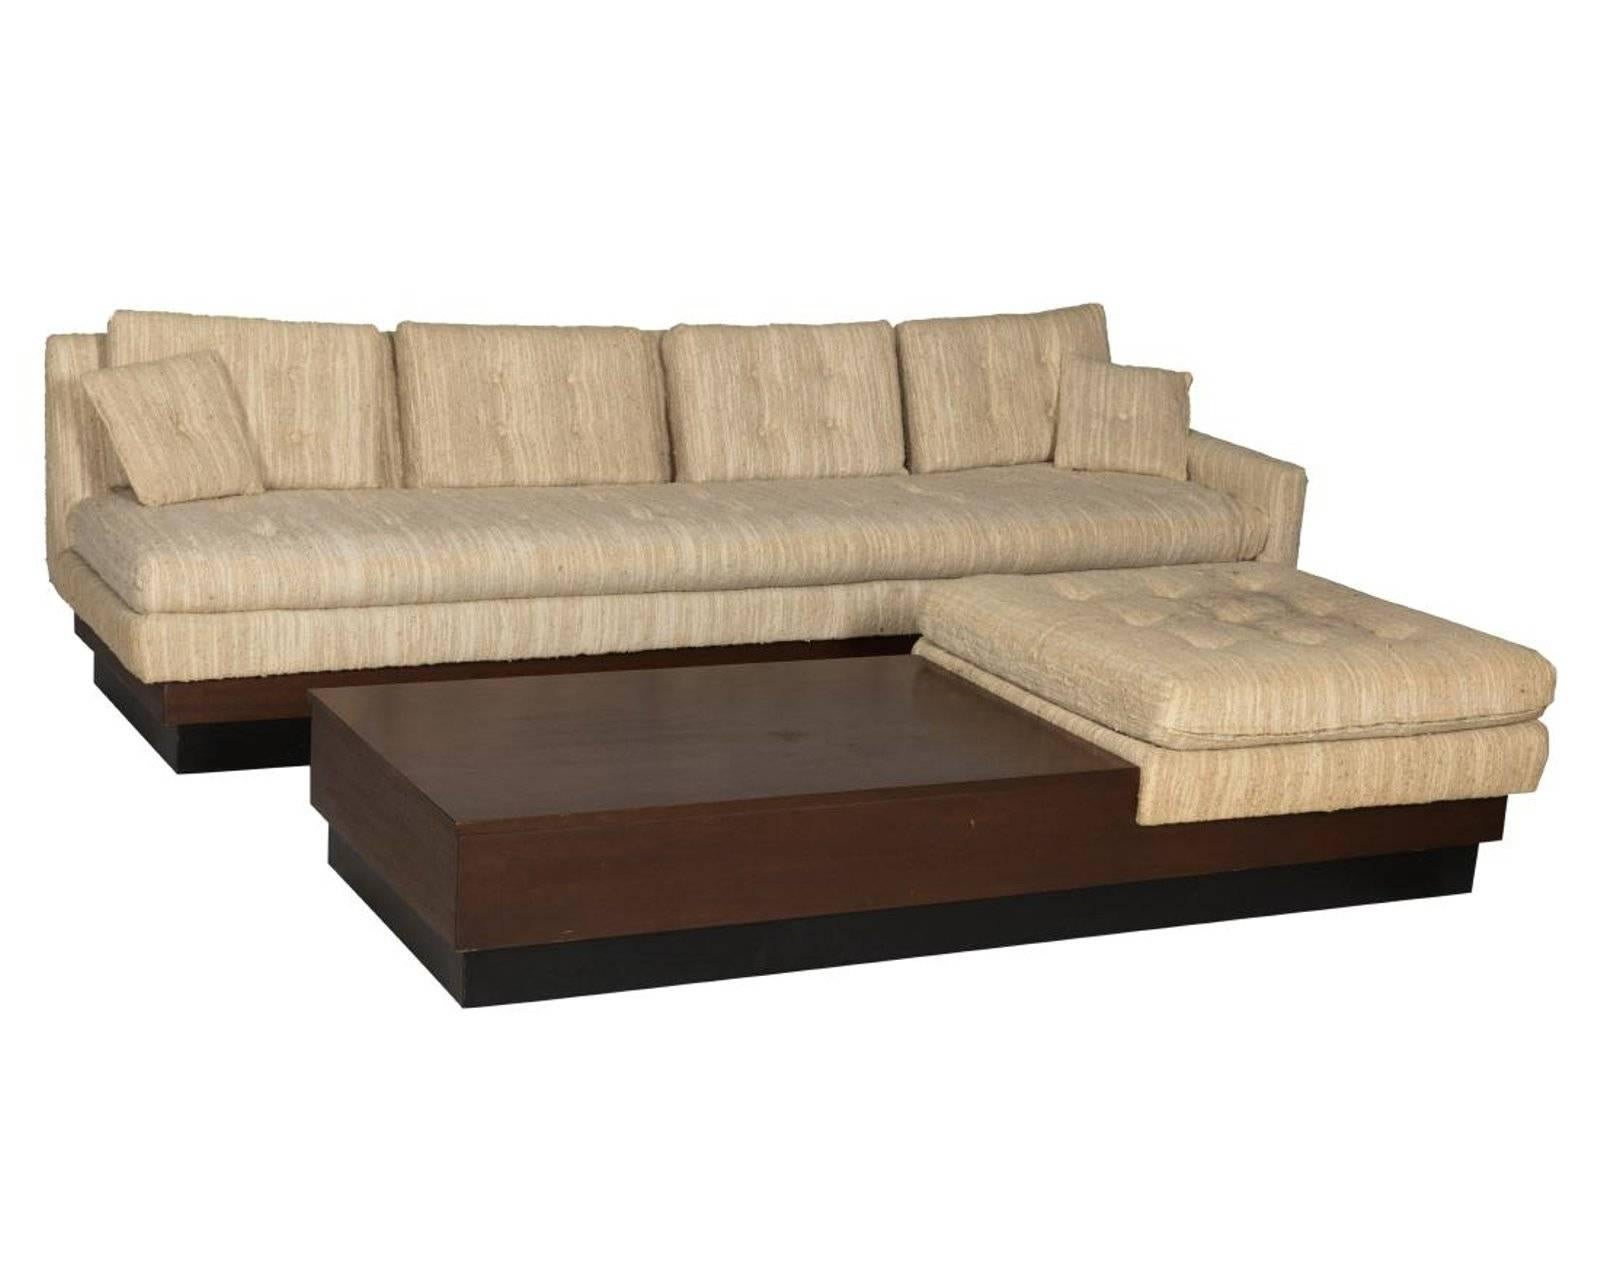 plinth base sofa